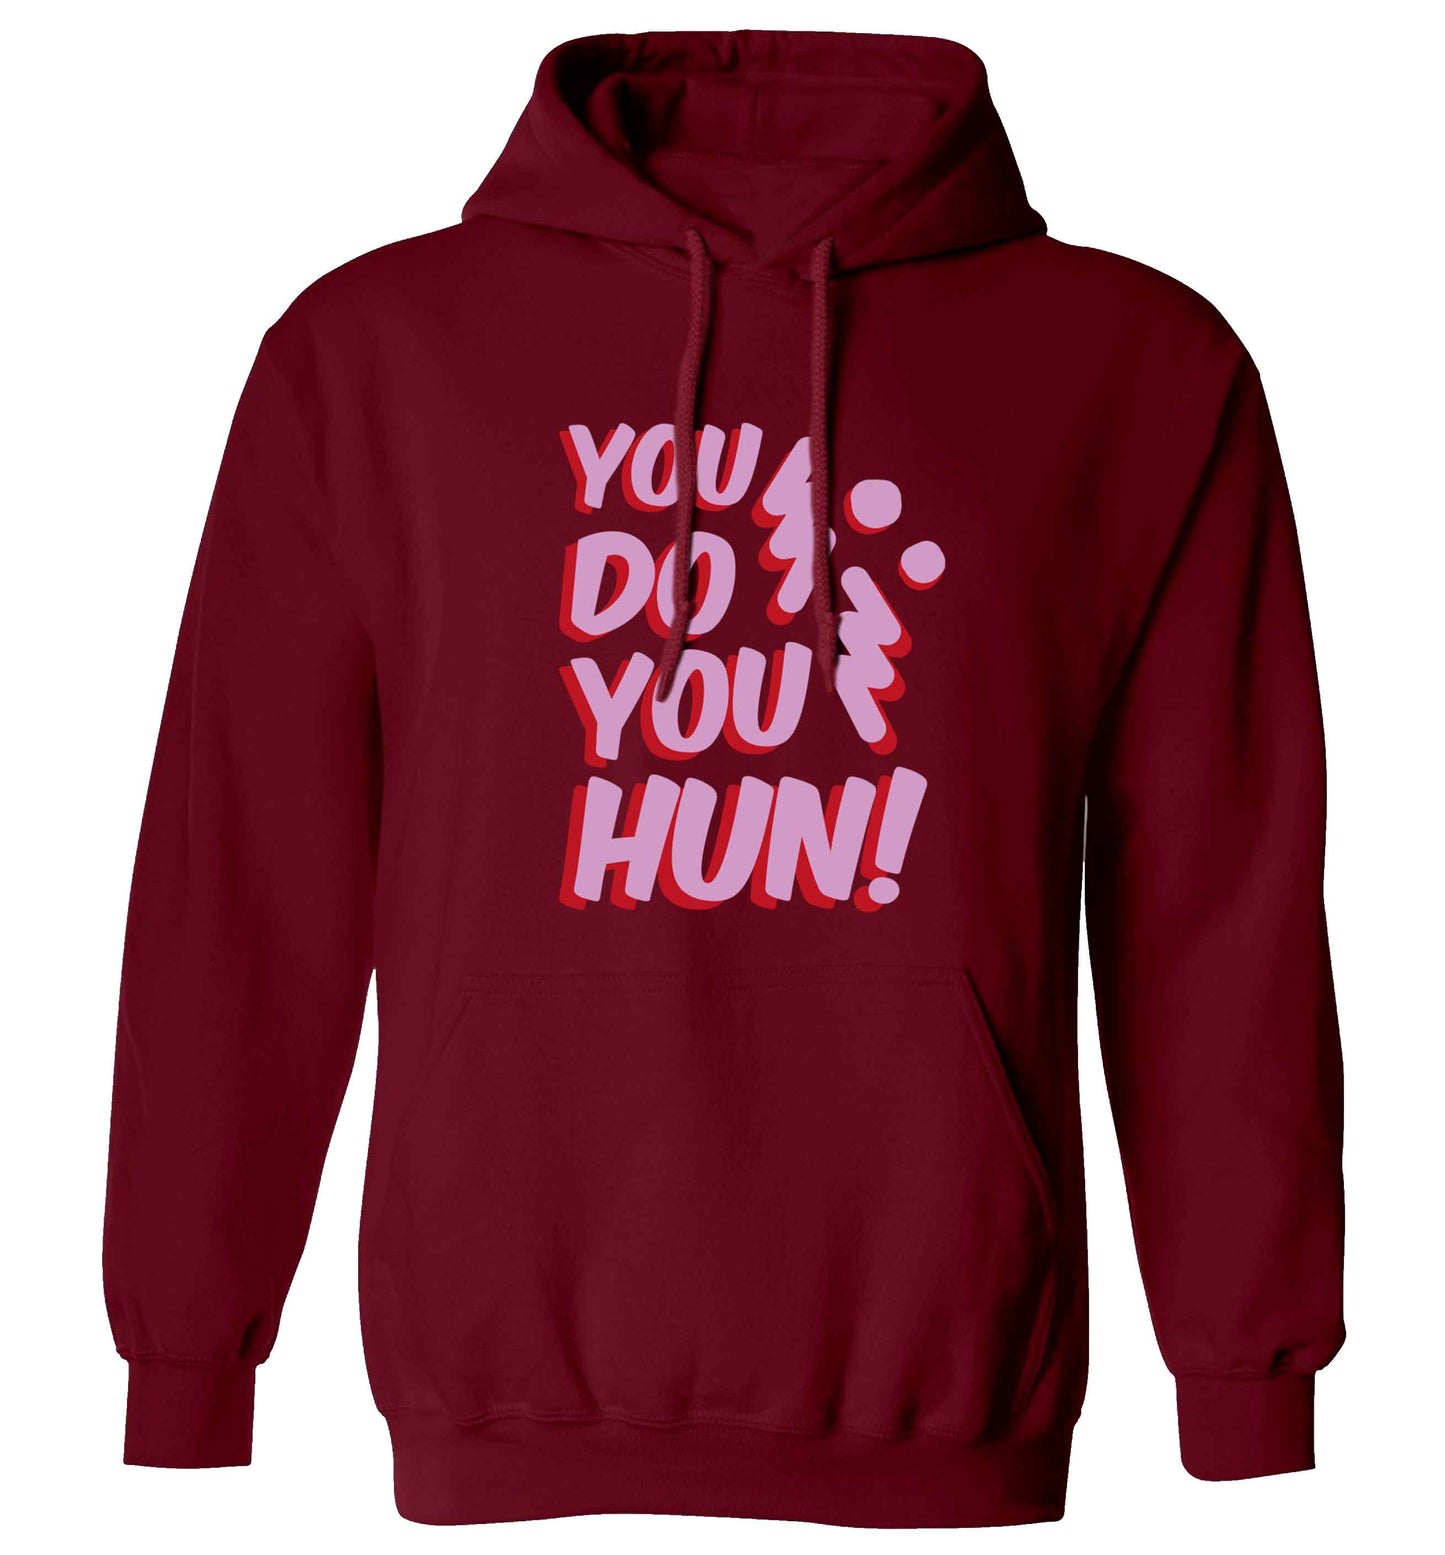 You do you hun adults unisex maroon hoodie 2XL